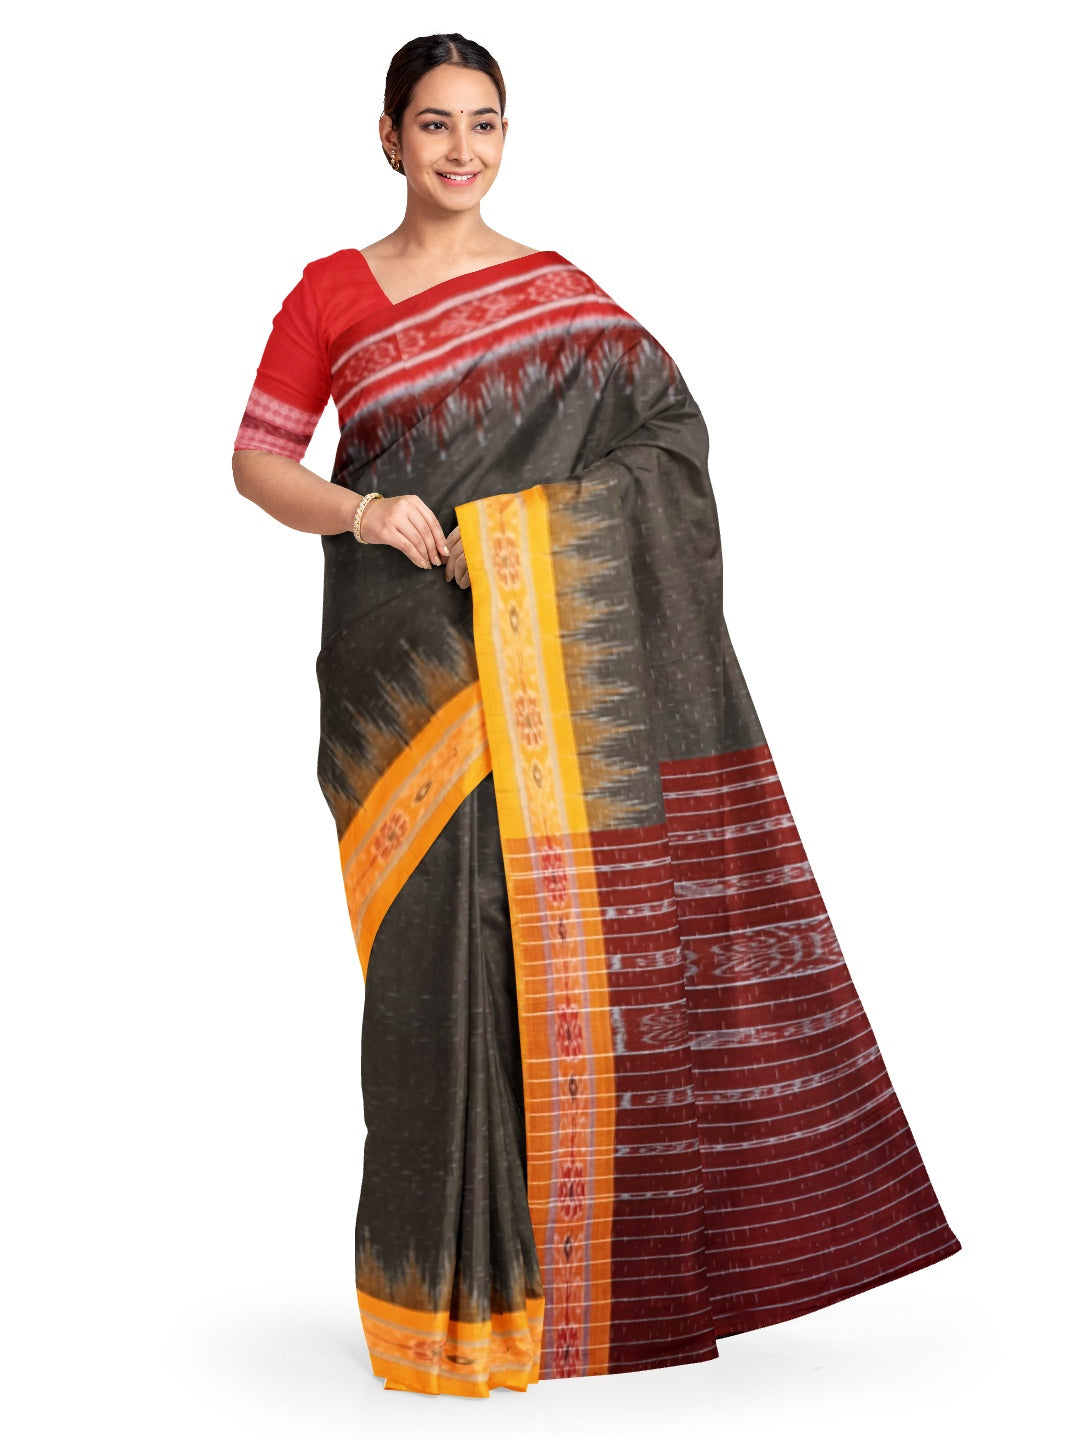 OliveGreen Cotton Gangajamuna Odisha Ikat saree  with mix match cotton ikat blouse